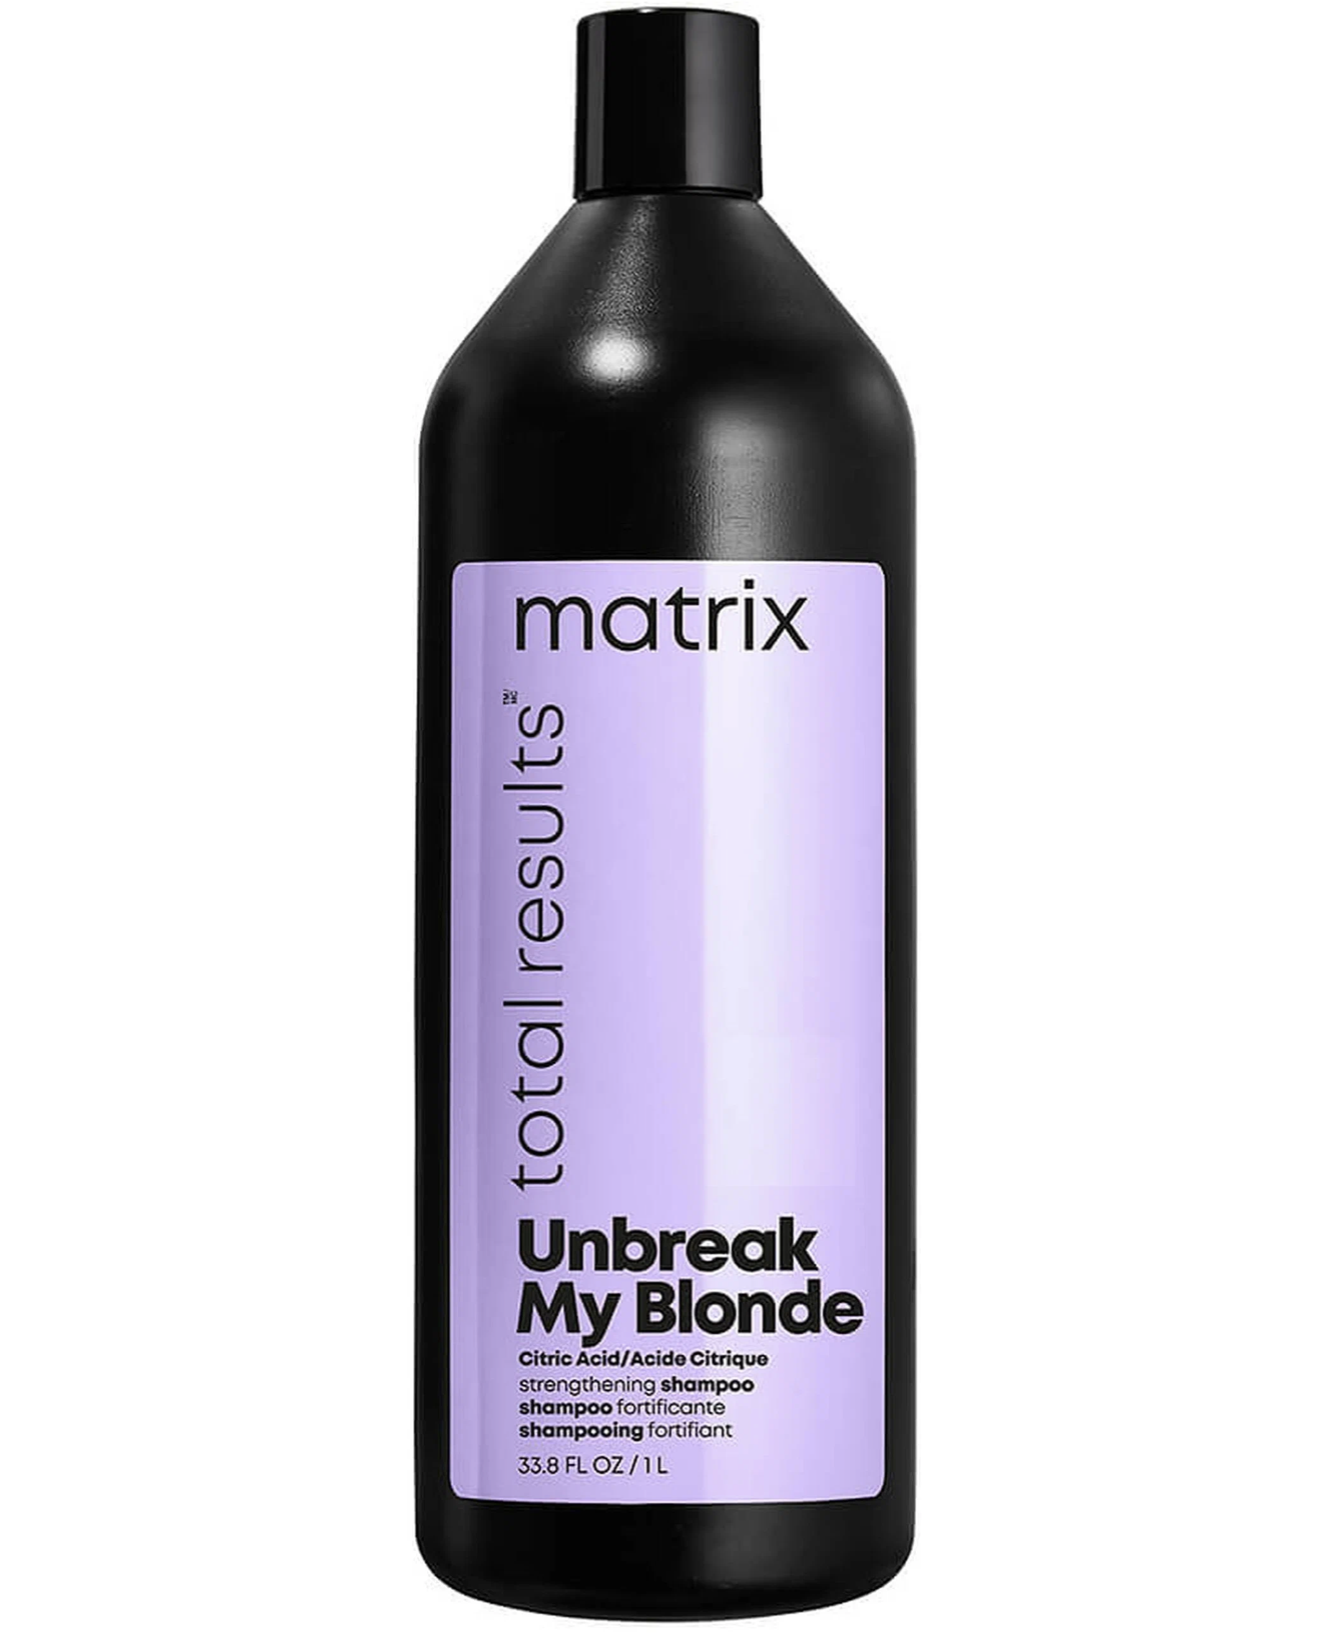   / Matrix Unbreak My Blonde -     1 